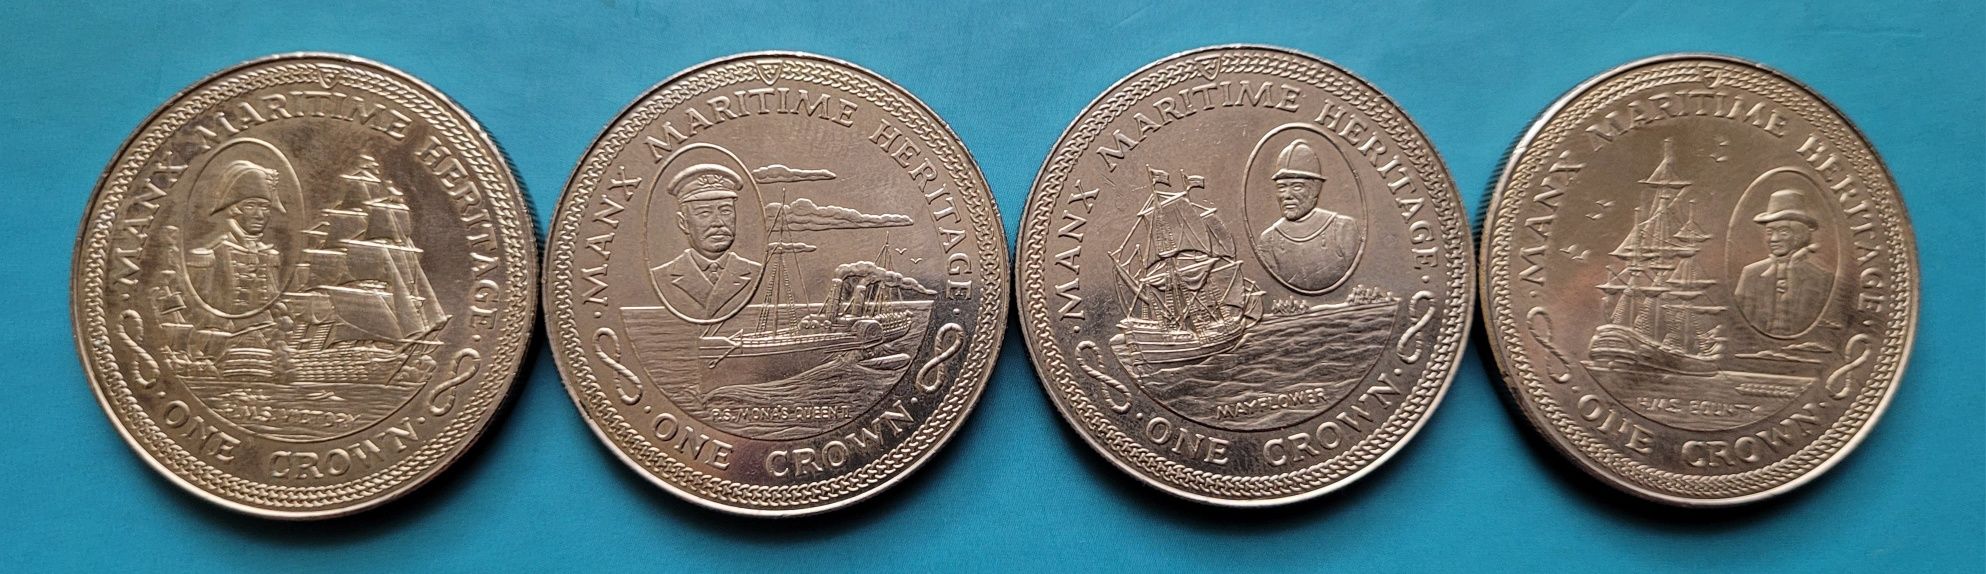 Zestaw monet Koron 1982 - Maritime heritage (396)